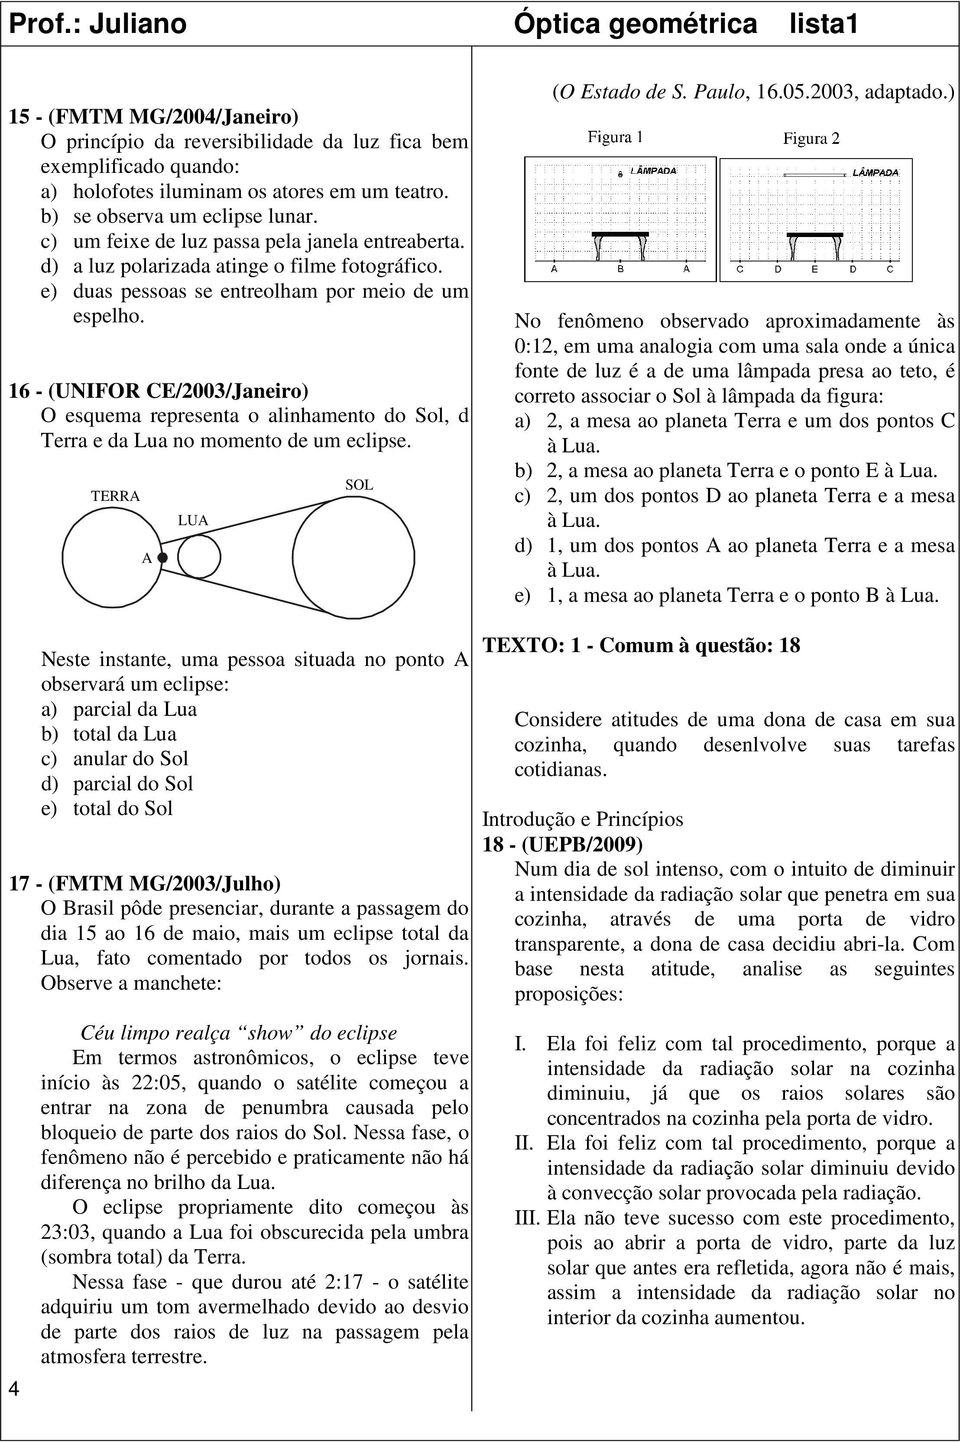 16 - (UNIFOR CE/2003/Janeiro) O esquema representa o alinhamento do Sol, d Terra e da Lua no momento de um eclipse. TERRA A LUA SOL (O Estado de S. Paulo, 16.05.2003, adaptado.